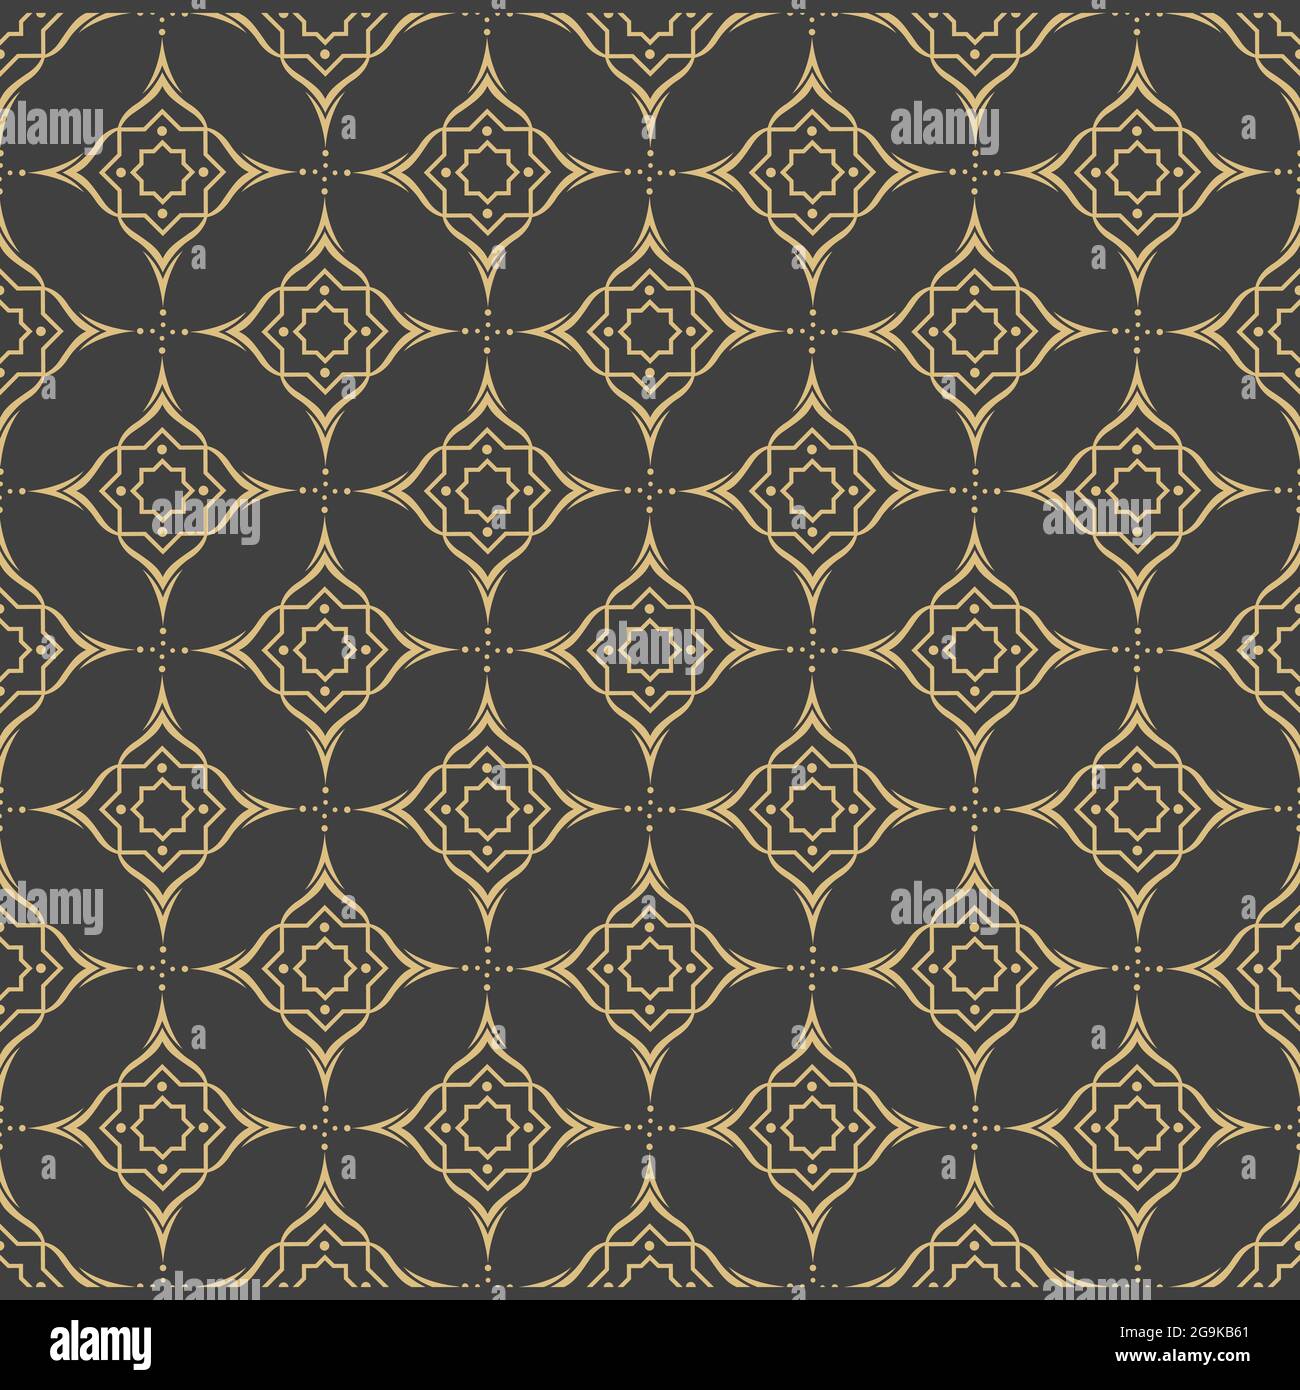 Arabische Ornamente. Muster, Hintergründe und Hintergrundbilder für Ihr Design. Textiler Schmuck. Vektorgrafik. Stock Vektor